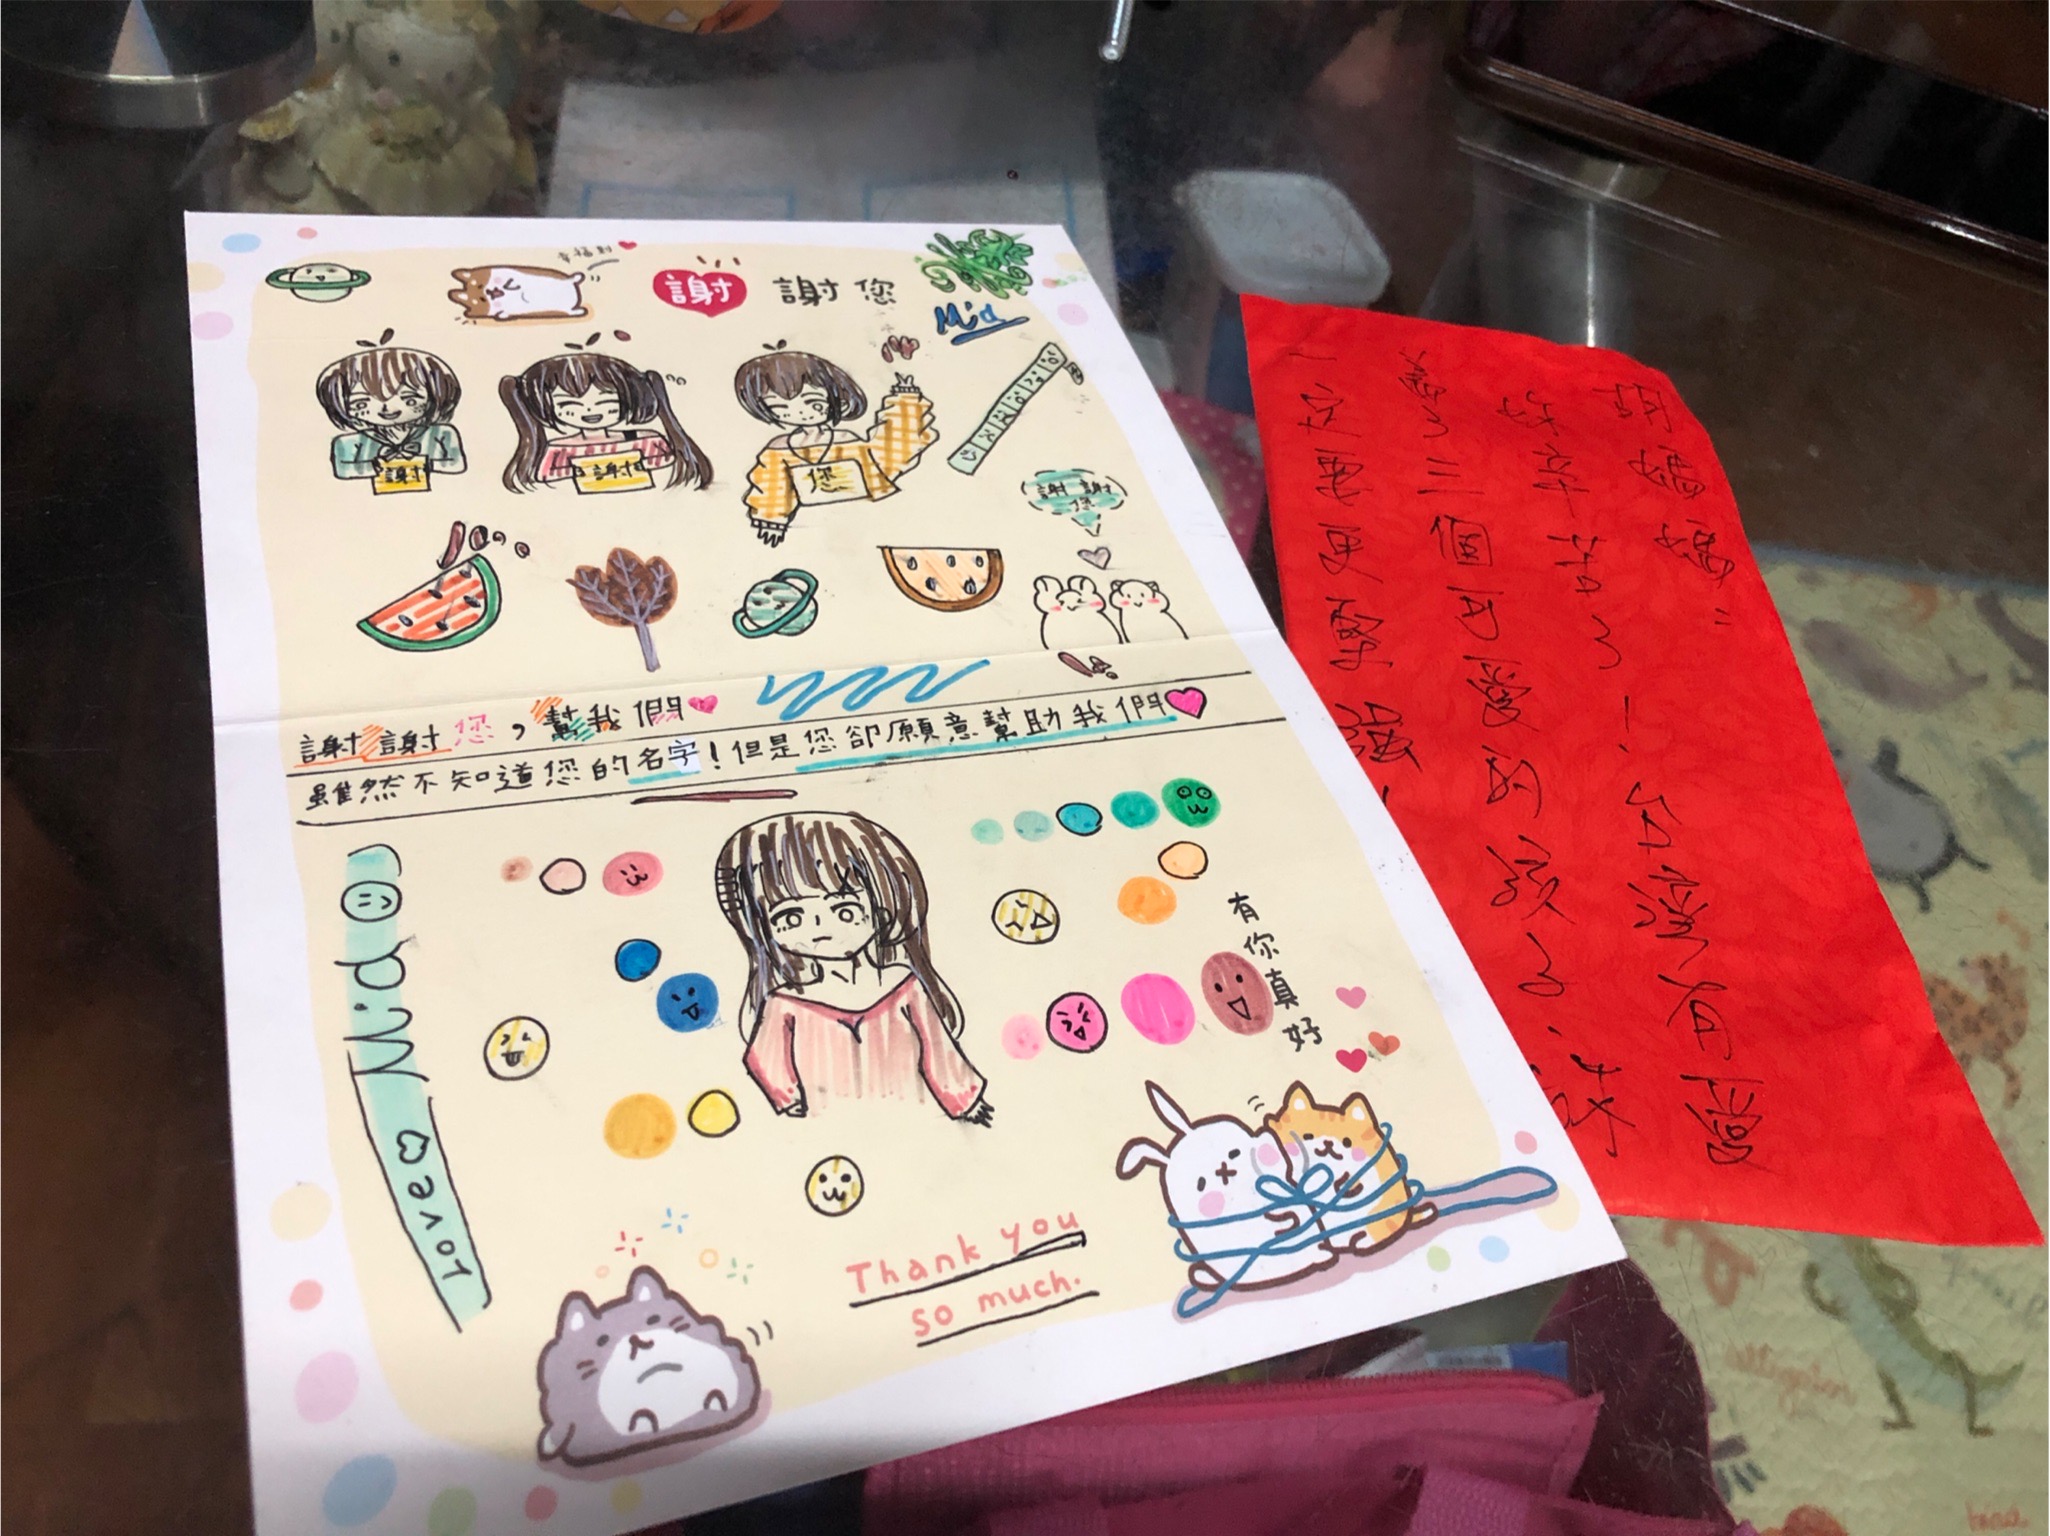 善心人士未署名 只在紅包紙上寫了一段鼓勵的話  胡小妹的姐姐用畫圖表達全家人的感謝